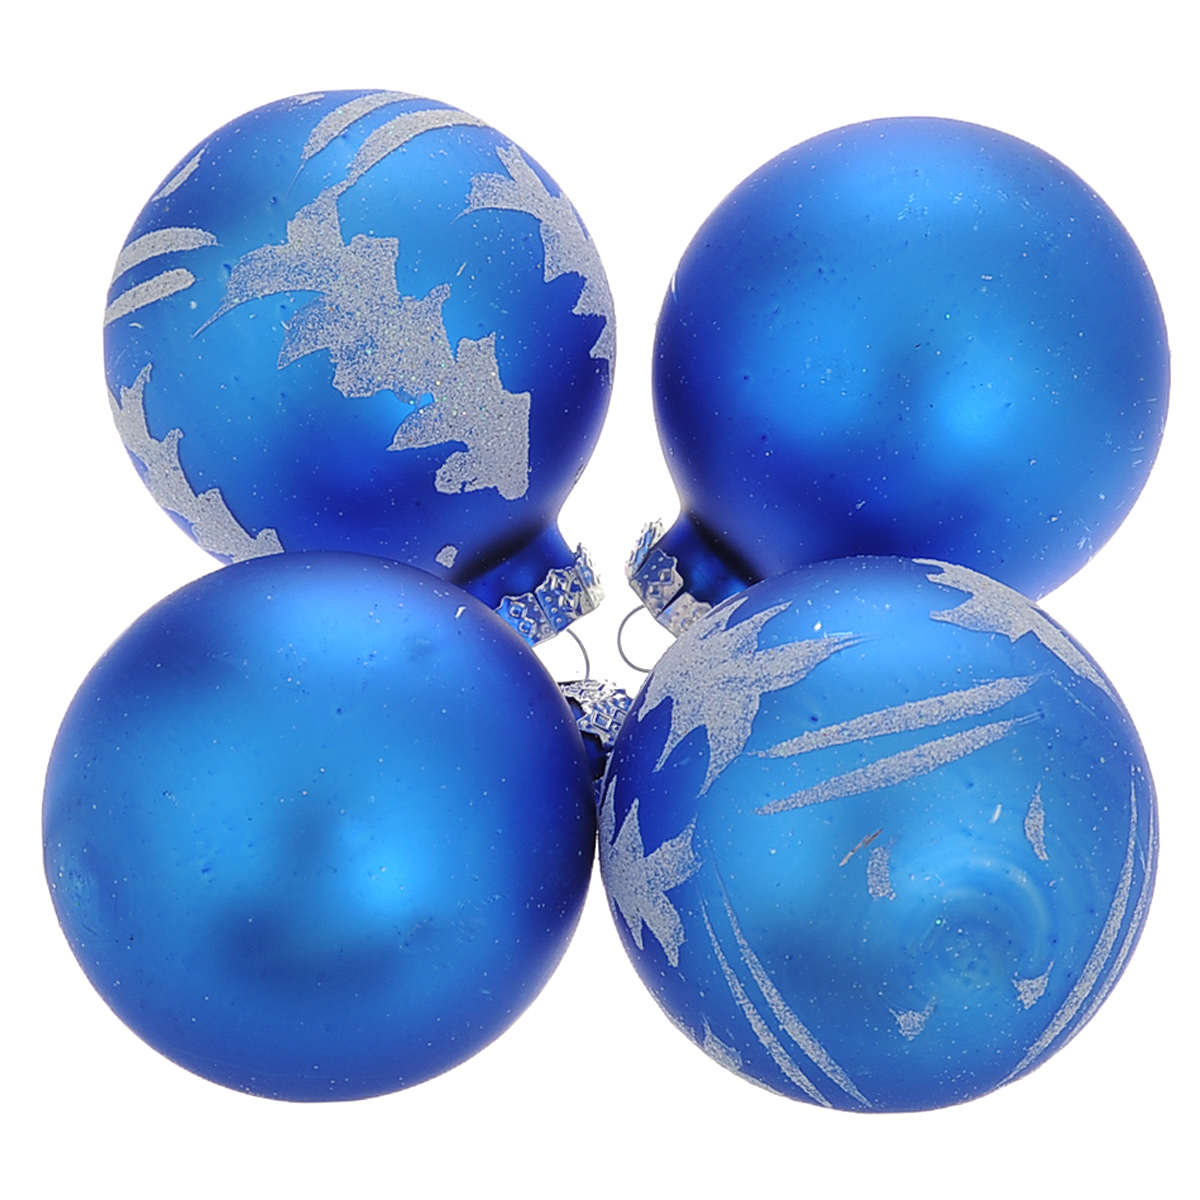 фото Набор новогодних подвесных украшений "Шар", цвет: серебристый, синий, диаметр 6 см, 4 шт. 34482 Феникс-презент